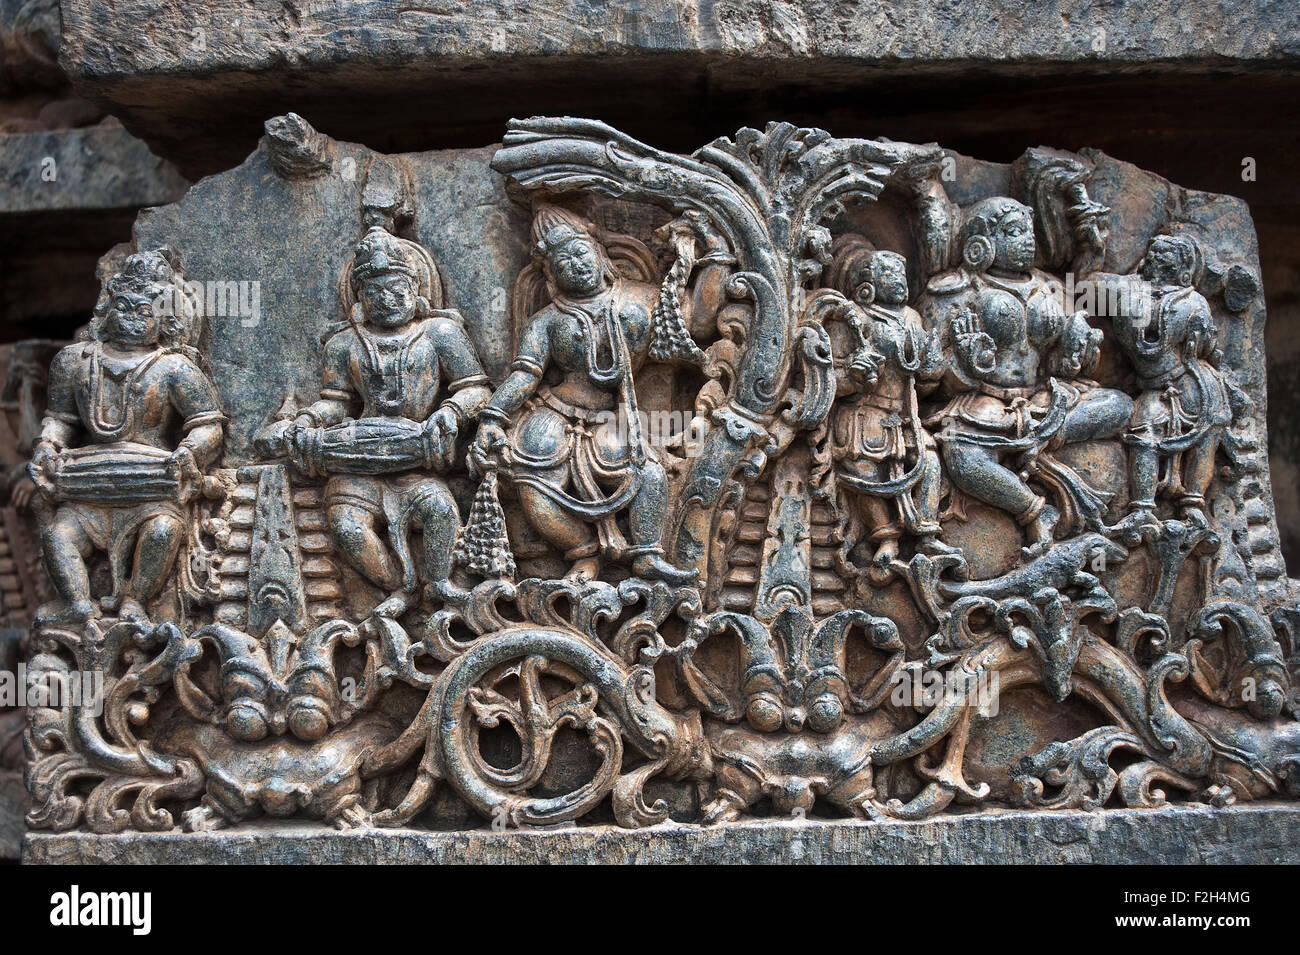 Sculpture at the Hoysaleswara temple ( India Stock Photo - Alamy